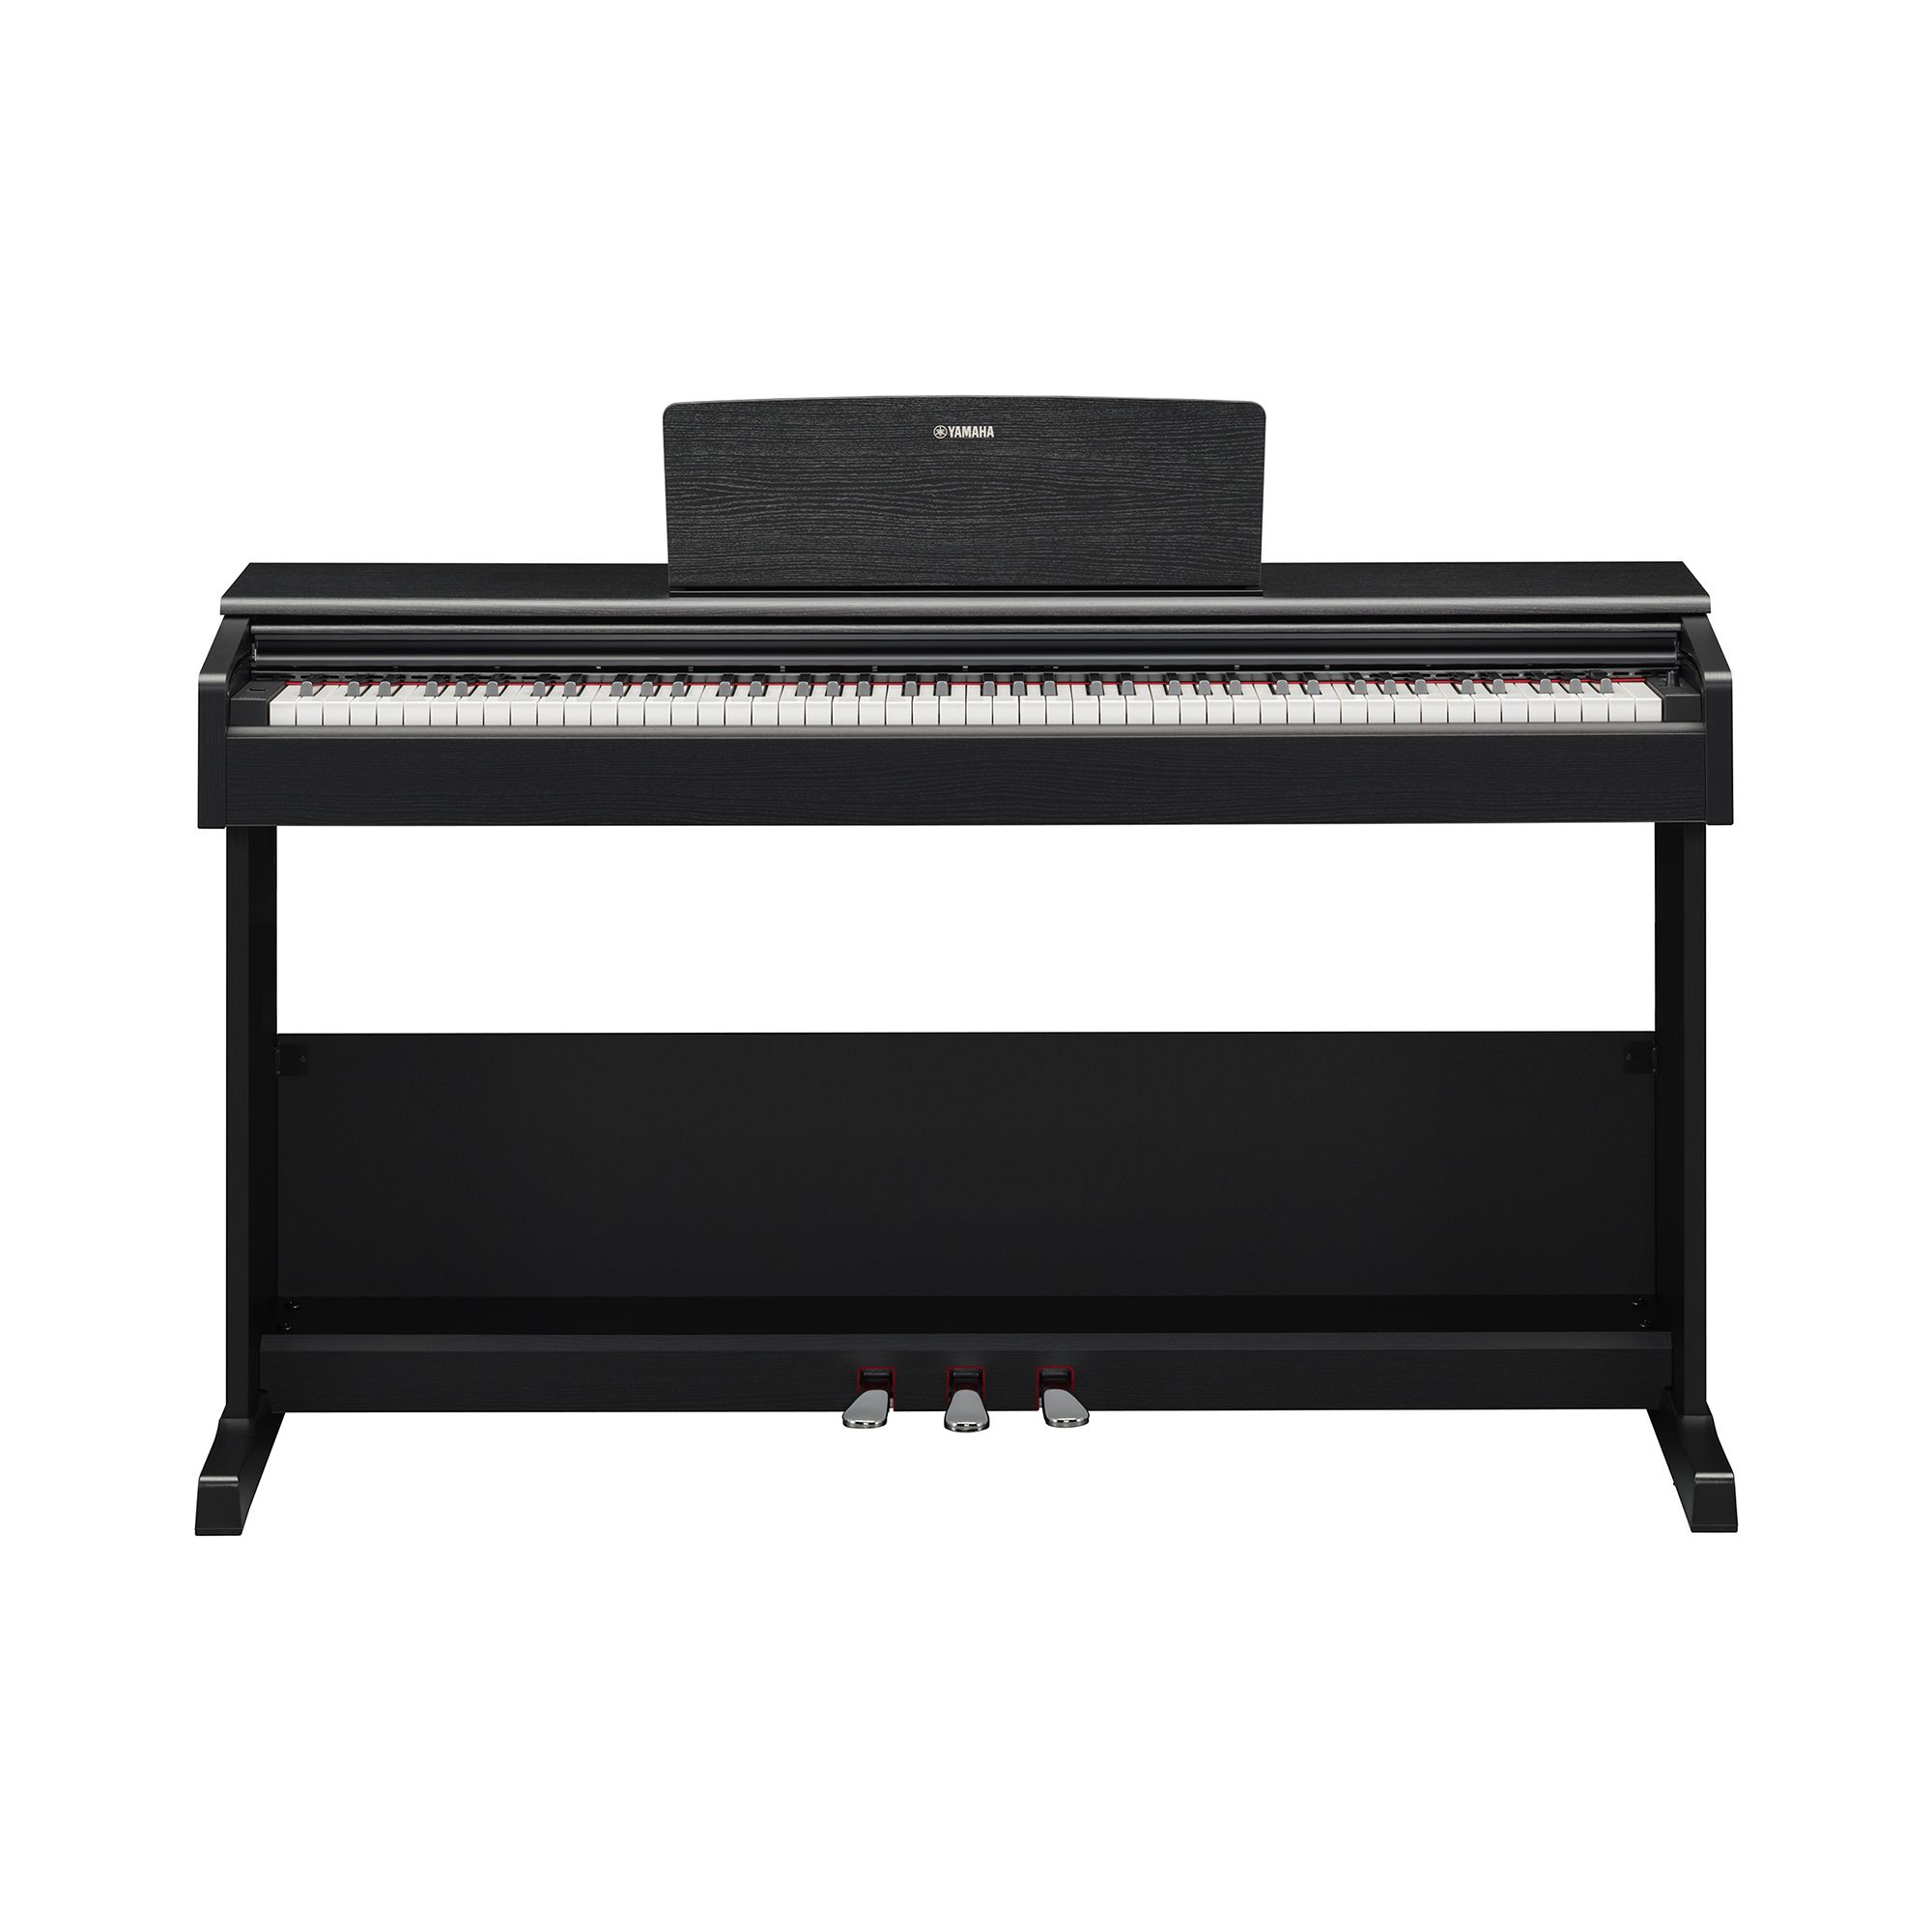 Đàn Piano điện, Digital Piano - Yamaha ARIUS YDP-105 (YDP105) - Black, 88 phím GHS - Hàng chính hãng